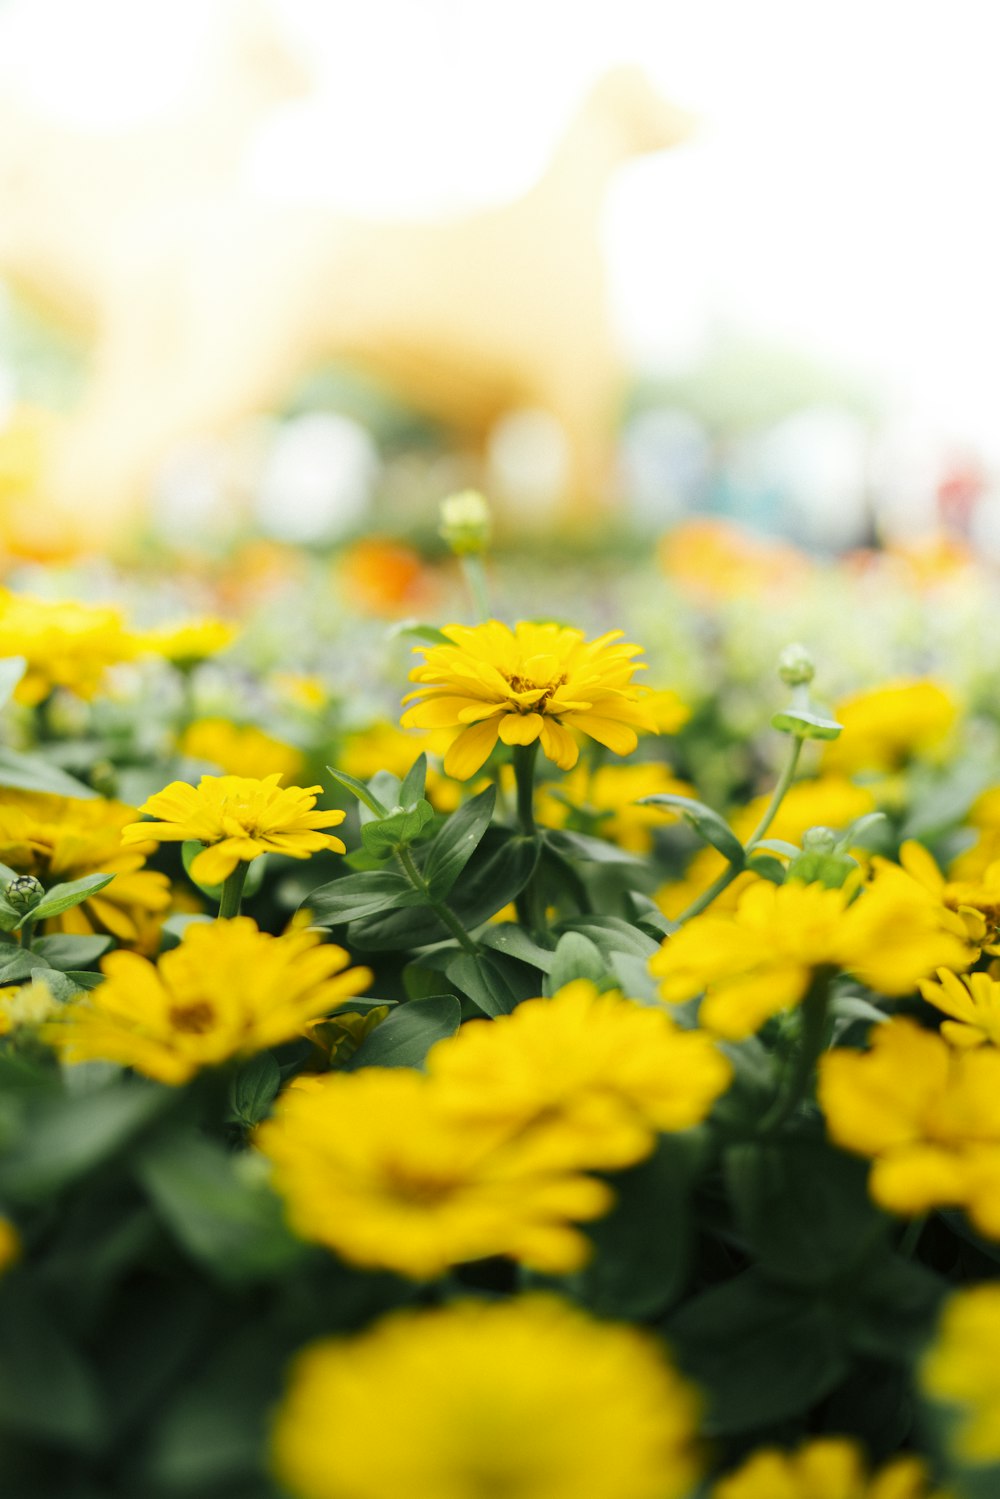 Photographie sélective de la mise au point du champ de fleurs à pétales jaunes